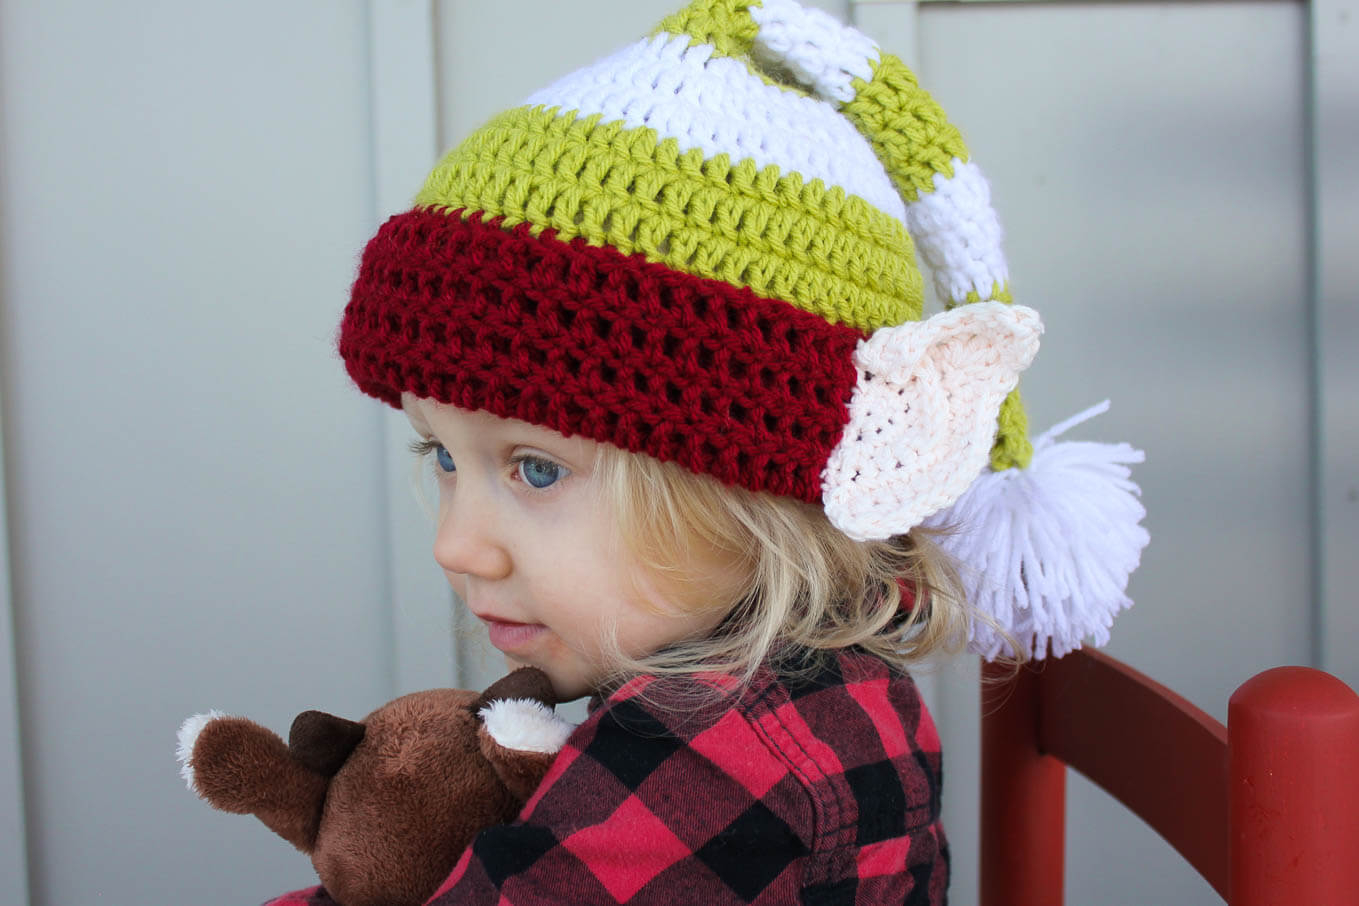 Crochet Hat With Ears Pattern Free Crochet Elf Hat Pattern With Ears 7 Make Do Crew